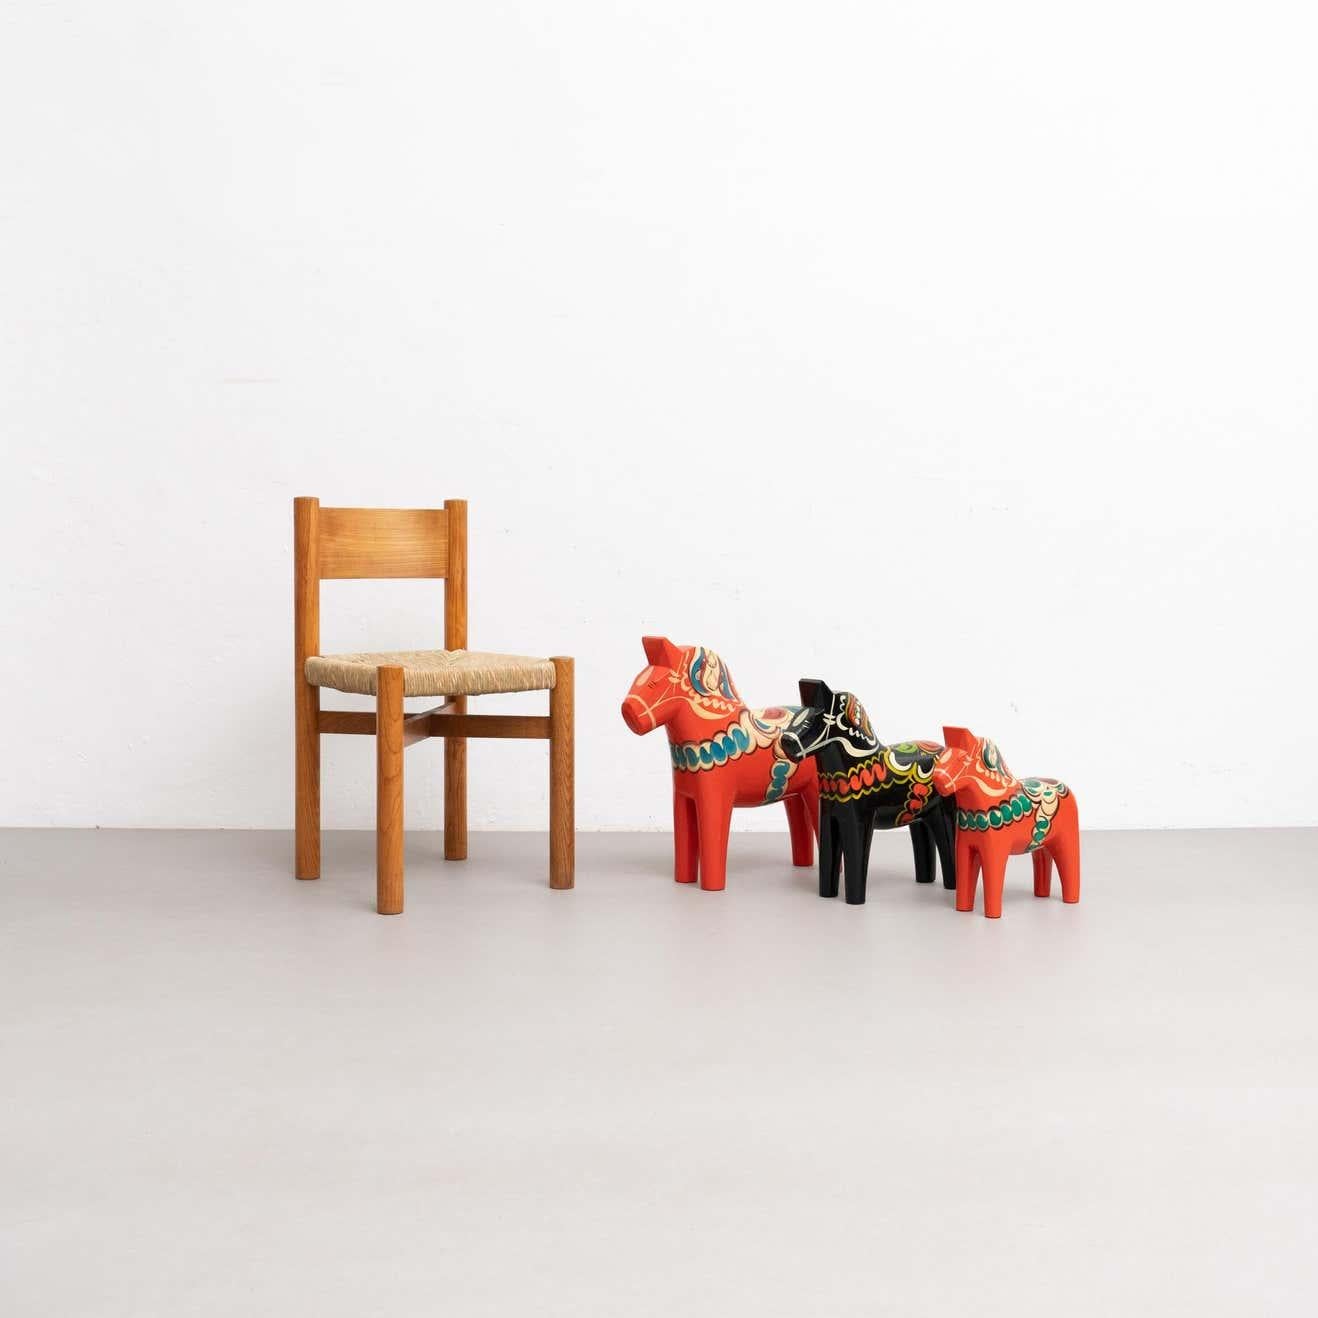 Set mit 5 handbemalten traditionellen schwedischen Dala-Pferde-Spielzeugen aus Holz.

Entworfen von Nils Olsson in Schweden, um 1960.
MATERIALIEN:
Holz

Originaler Zustand mit geringen alters- und gebrauchsbedingten Abnutzungserscheinungen, der eine